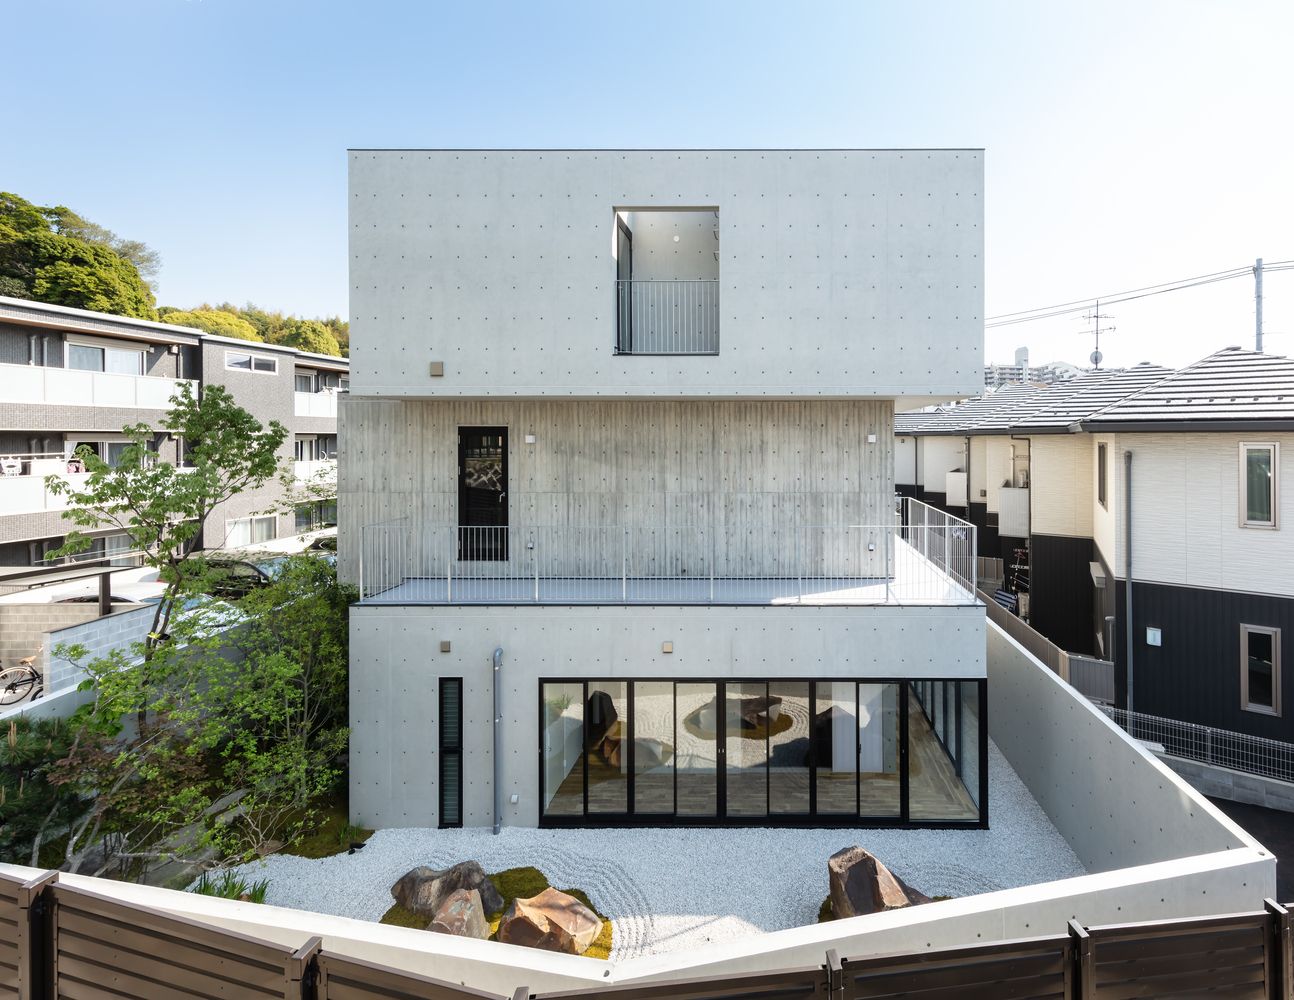 广岛的层叠旋转建筑 现代建筑艺术 设计出当代人类生活新体验